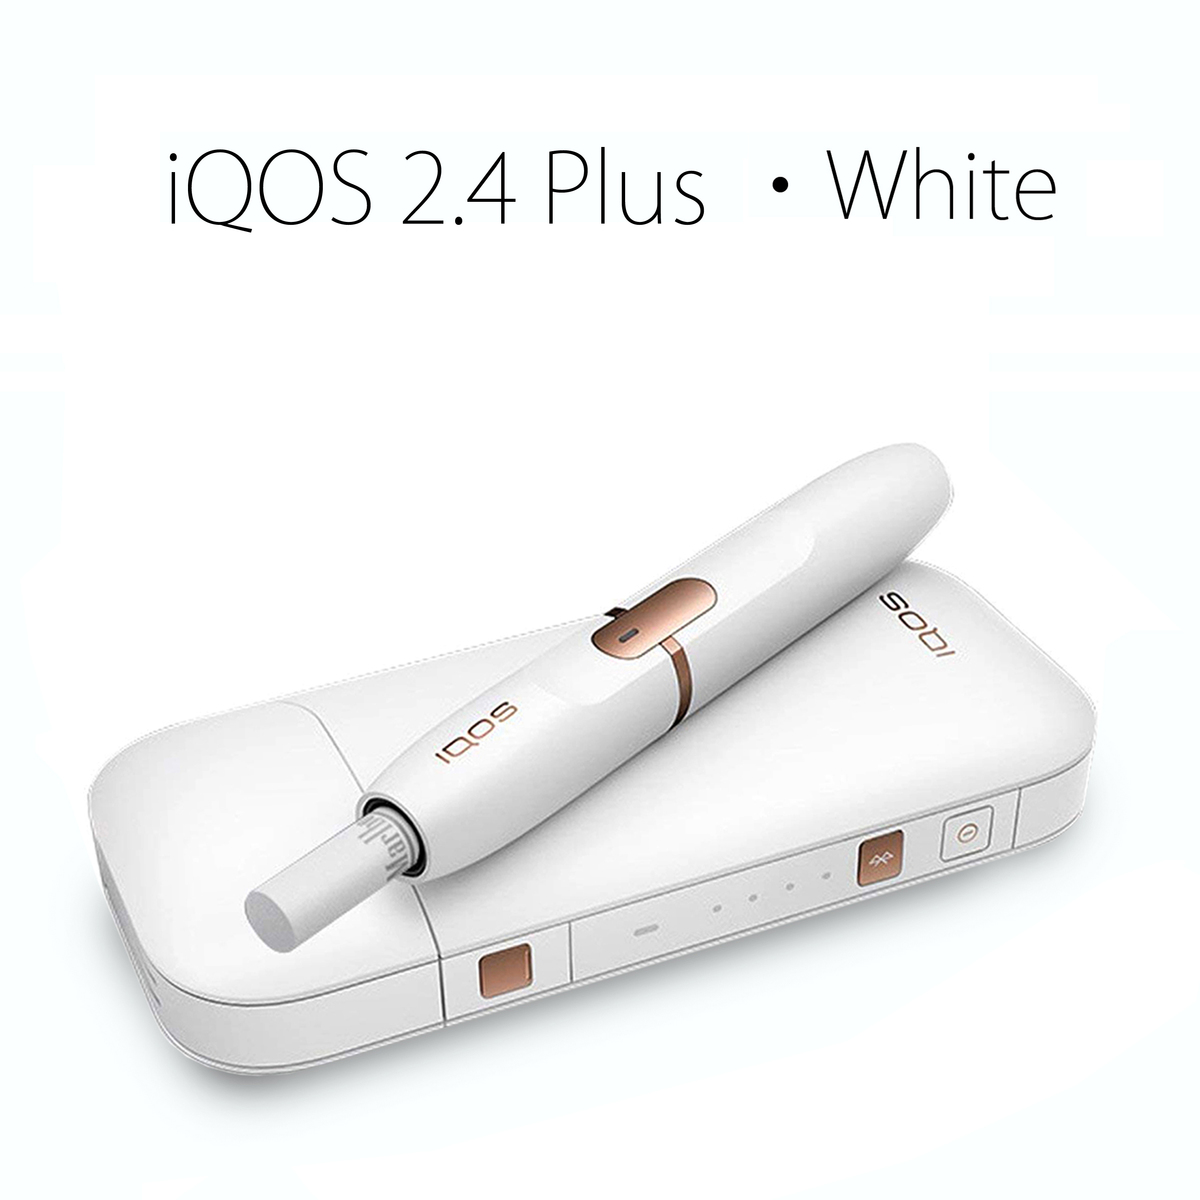 【楽天市場】iQOS 2.4Plus【新品未開封】WHITE ホワイト / 本体キット プラス アイコス タバコ iqos 2.4 plus